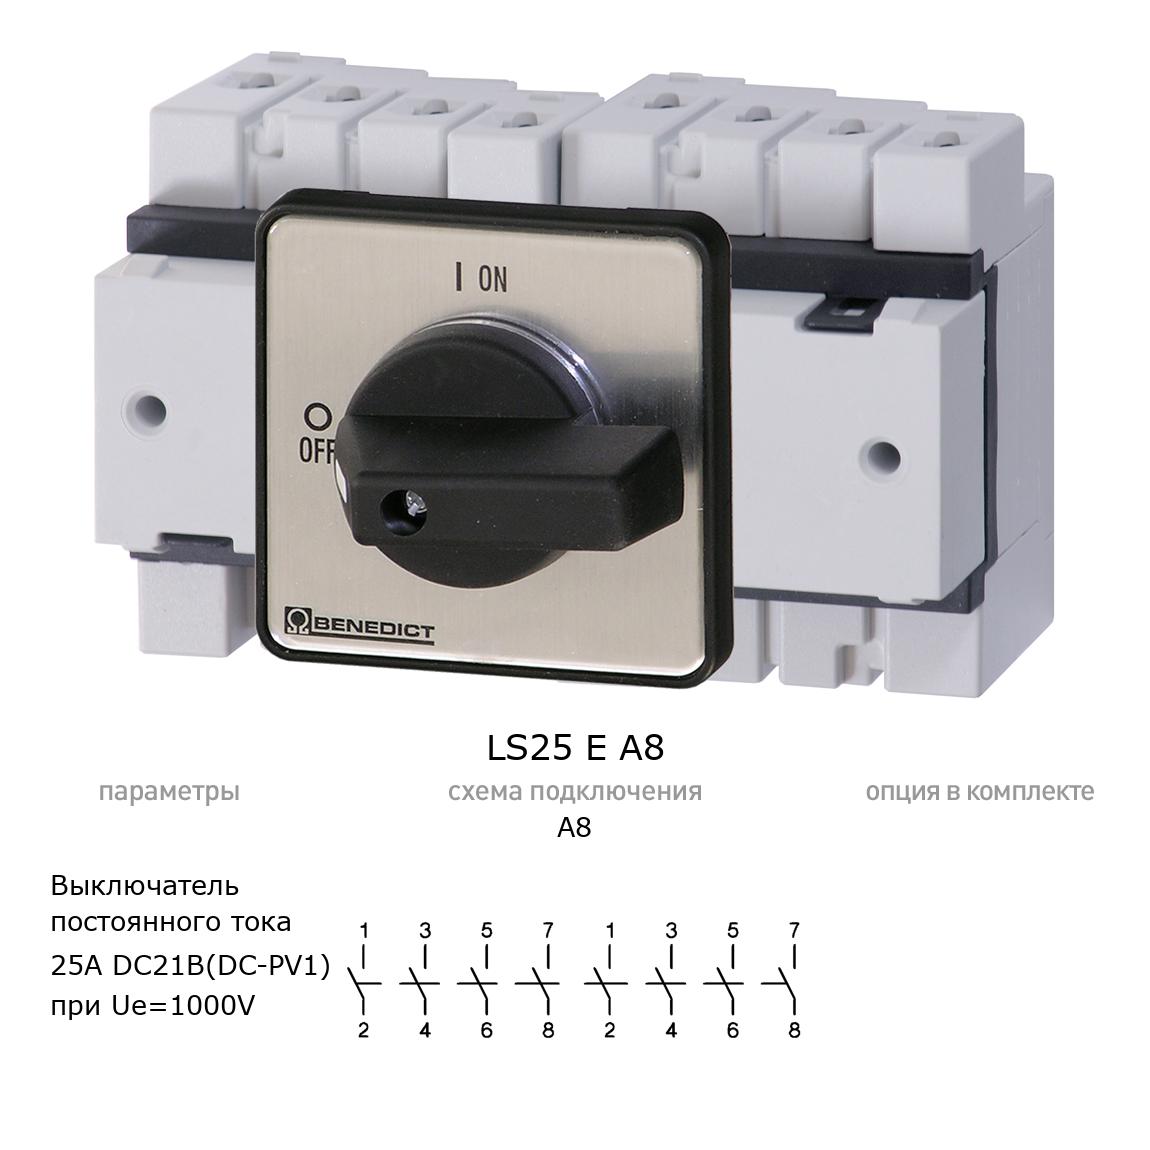 Кулачковый переключатель для постоянного тока (DC) LS25 E A8 BENEDICT